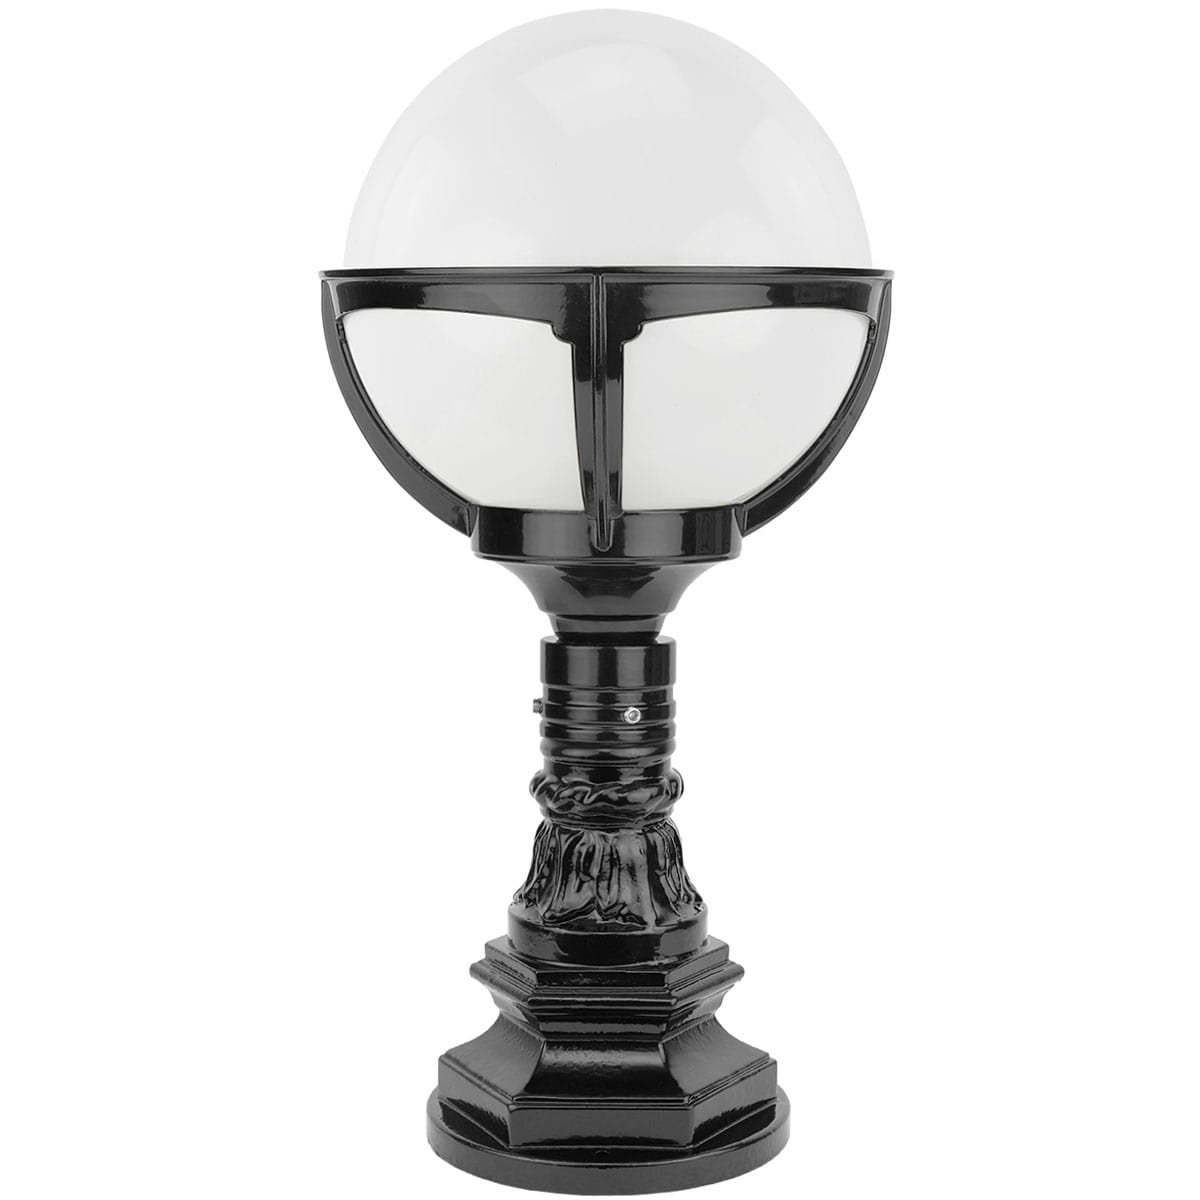 Outdoor lighting Classic Rural Sphere lamp Schagen opal glass ball - 56 cm